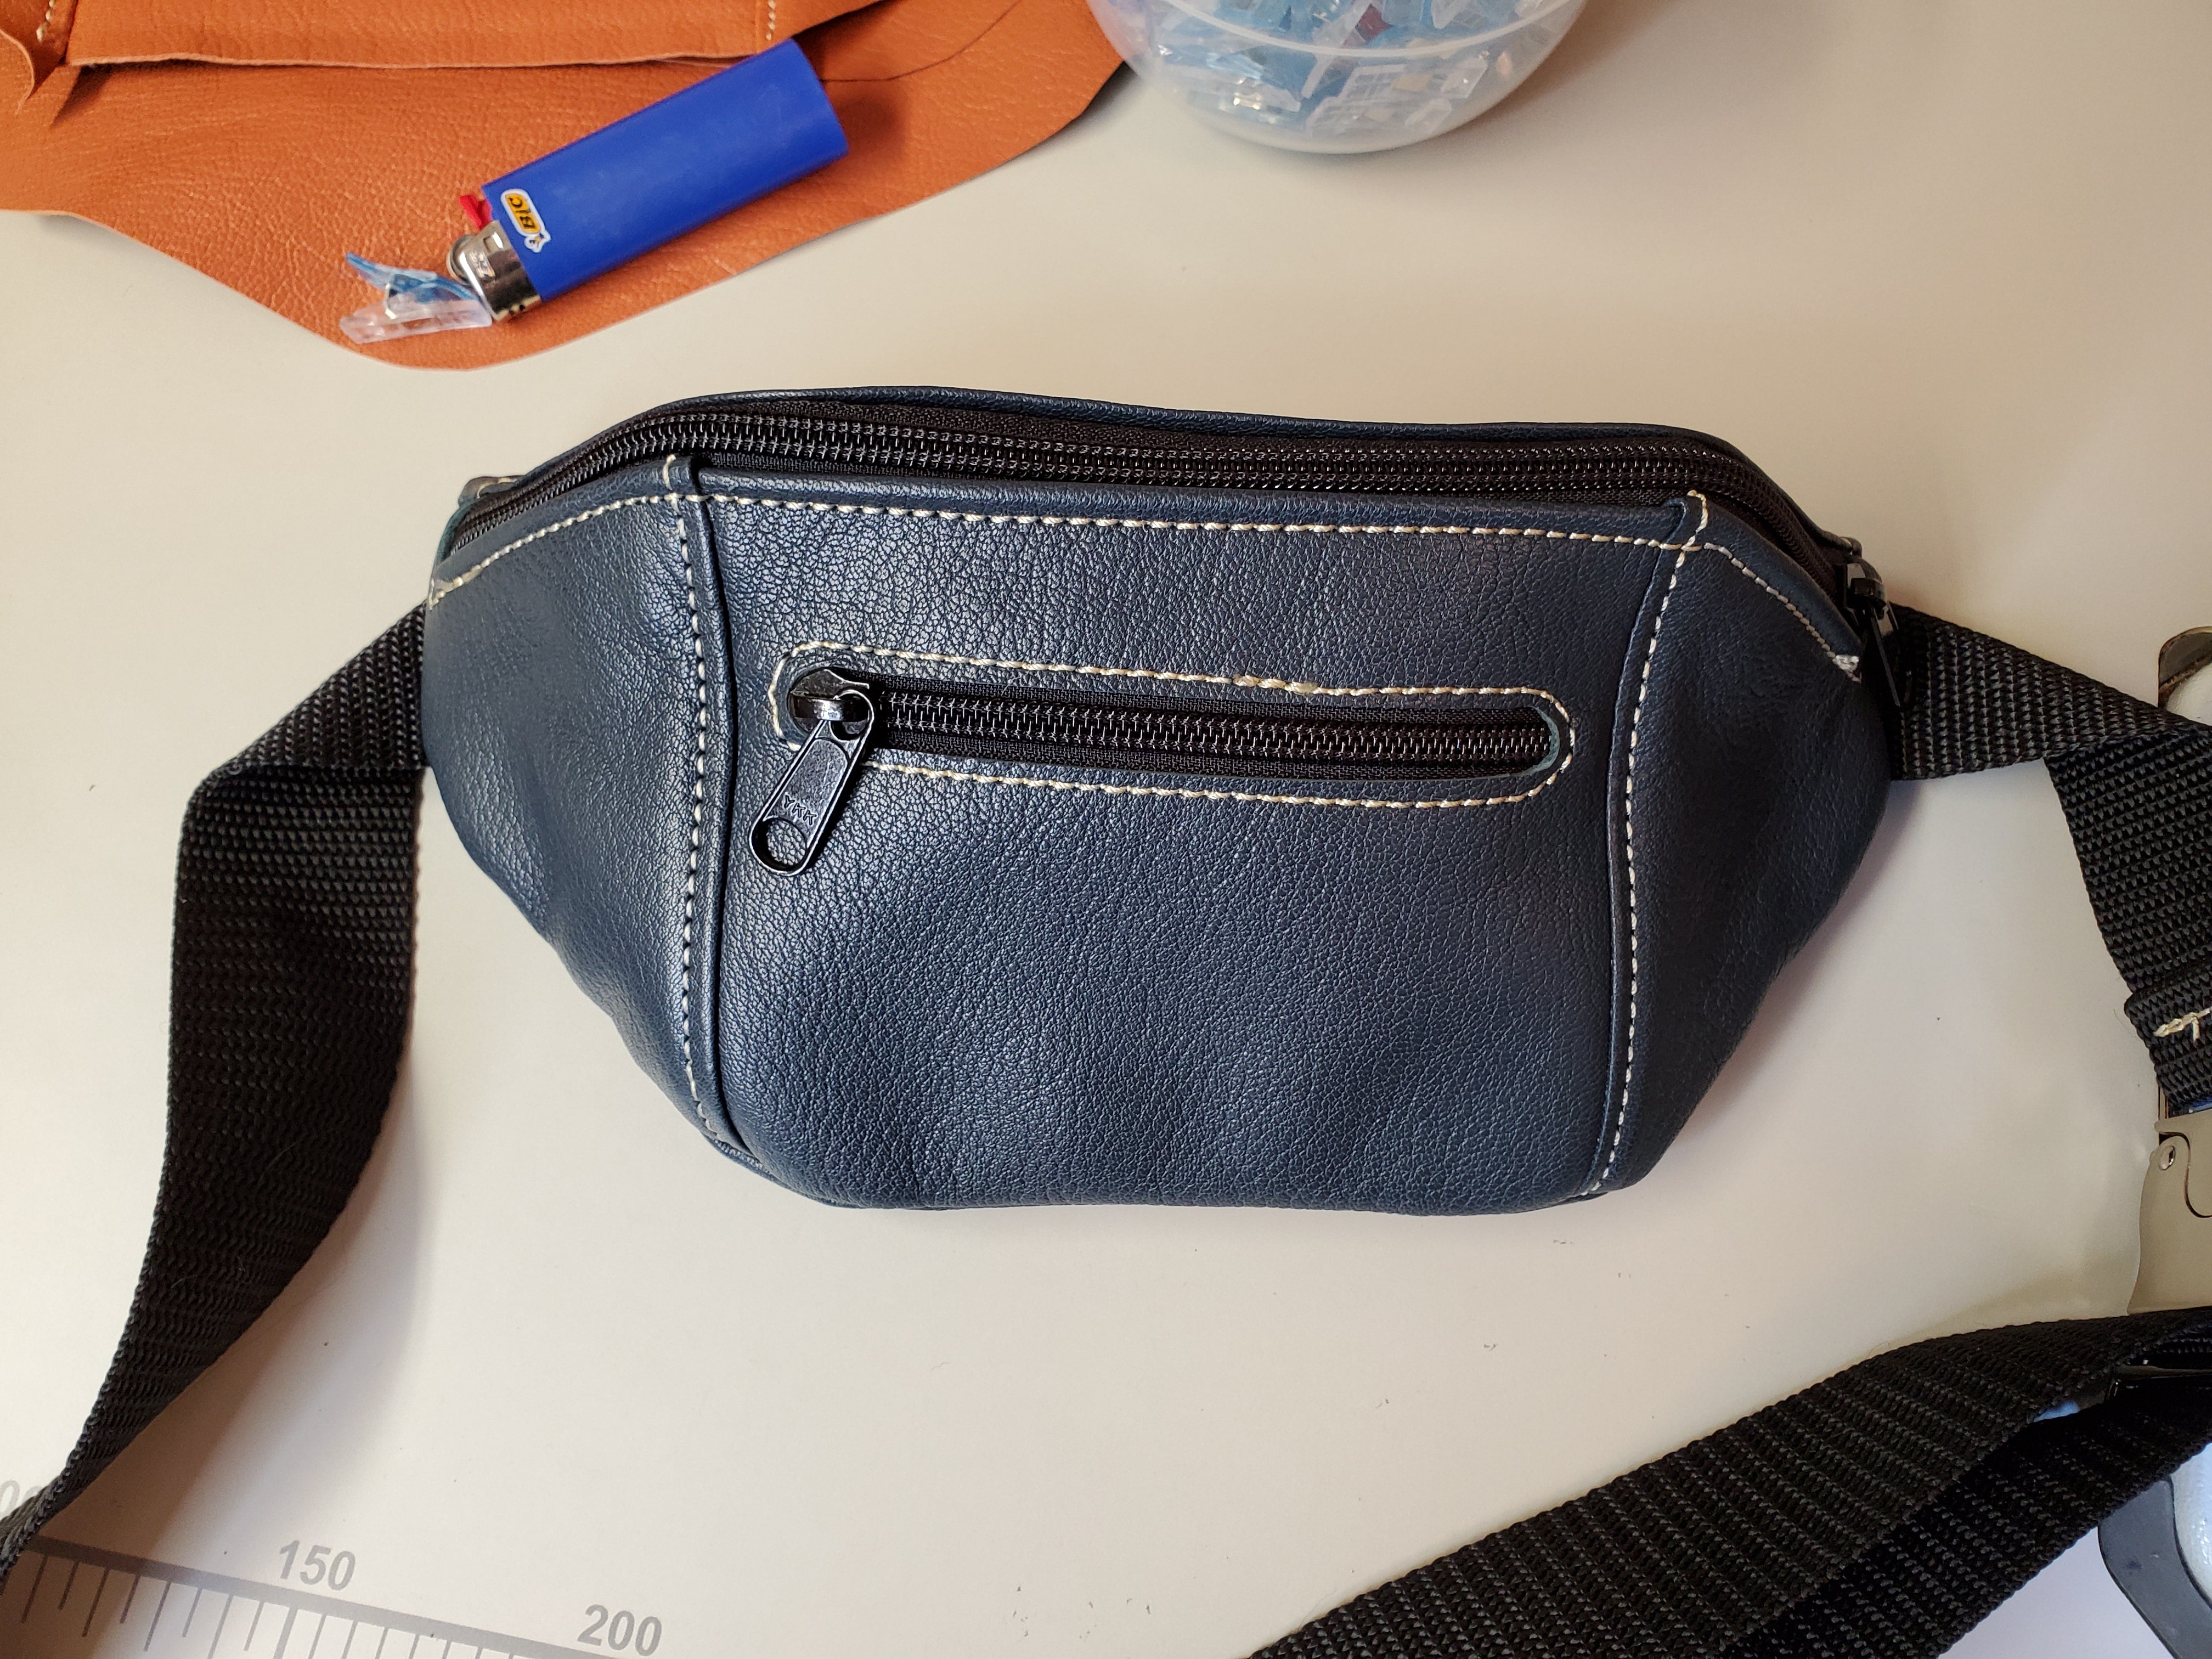 Syge person Datter øjeblikkelig Slim Line Belt Bag (Fanny Pack) Template – Maker's Leather Supply